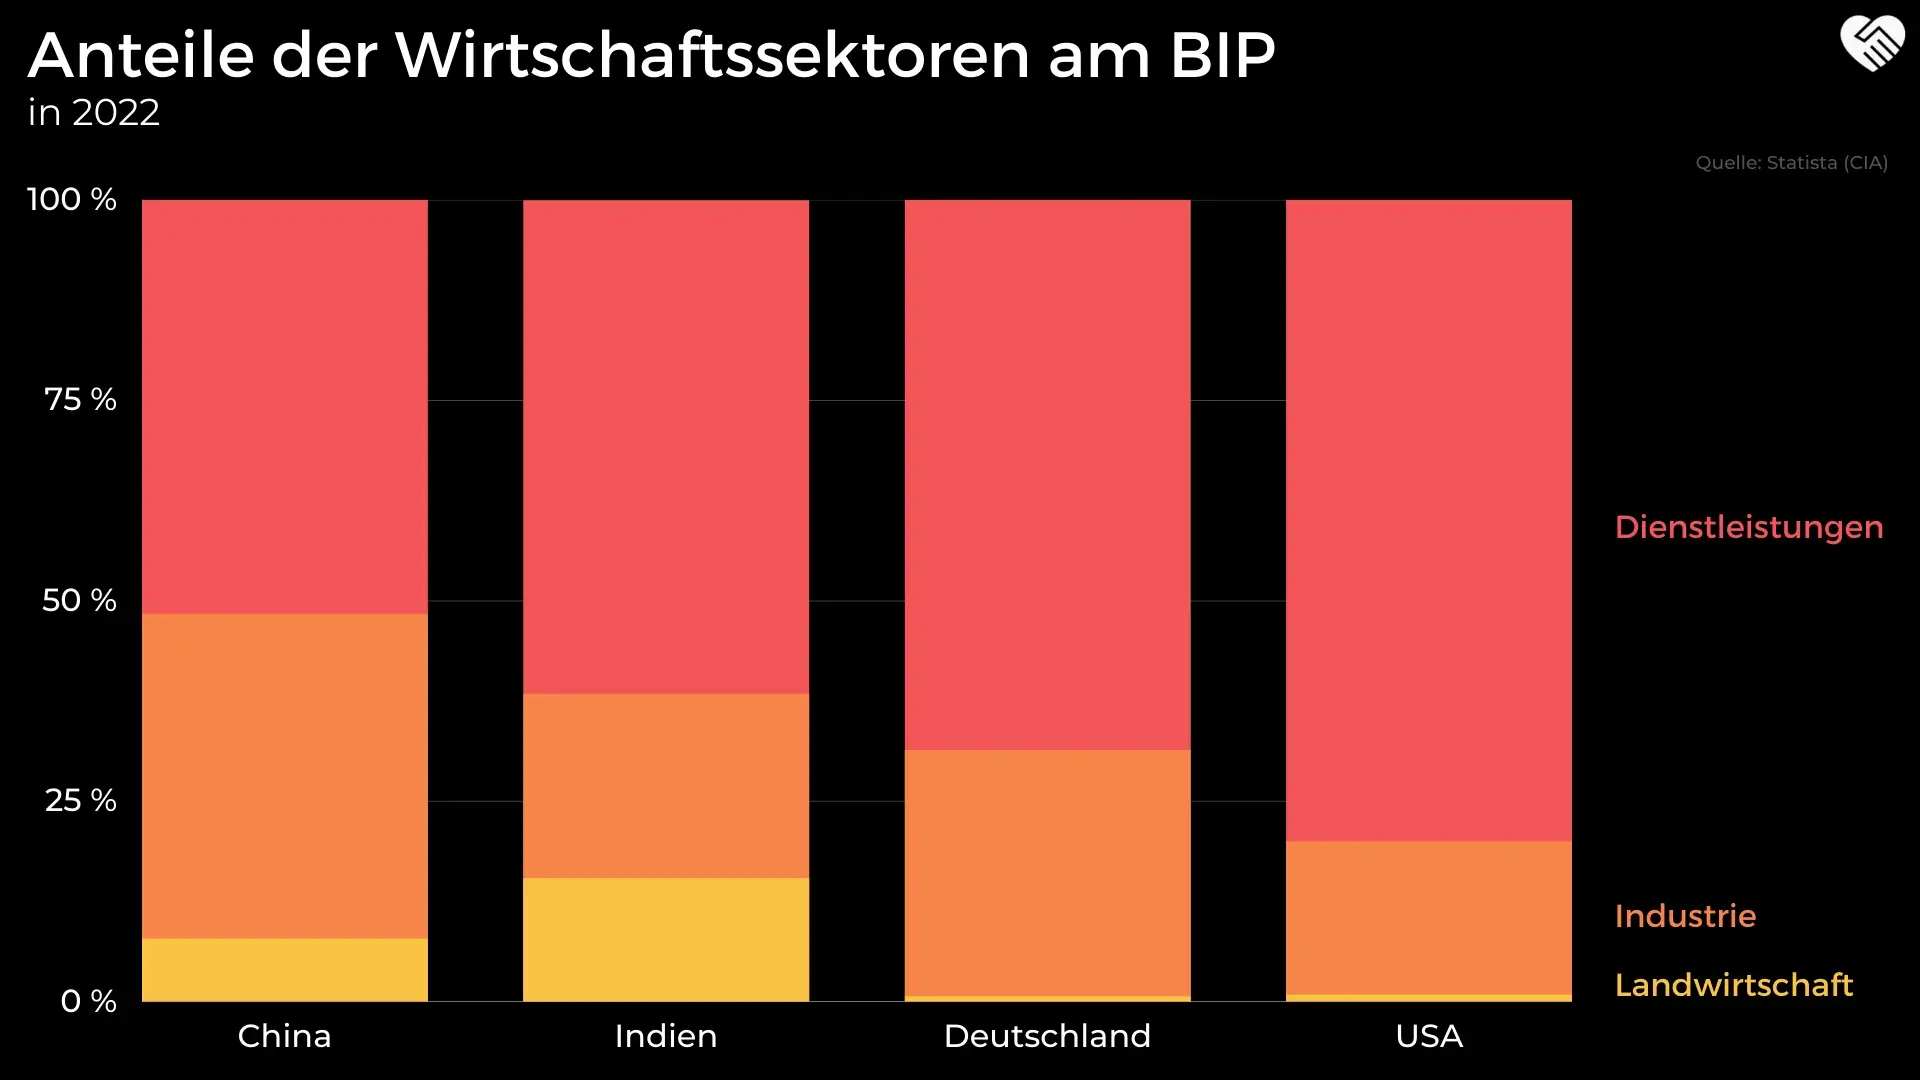 Anteile der Wirtschaftssektoren am BIP Indien